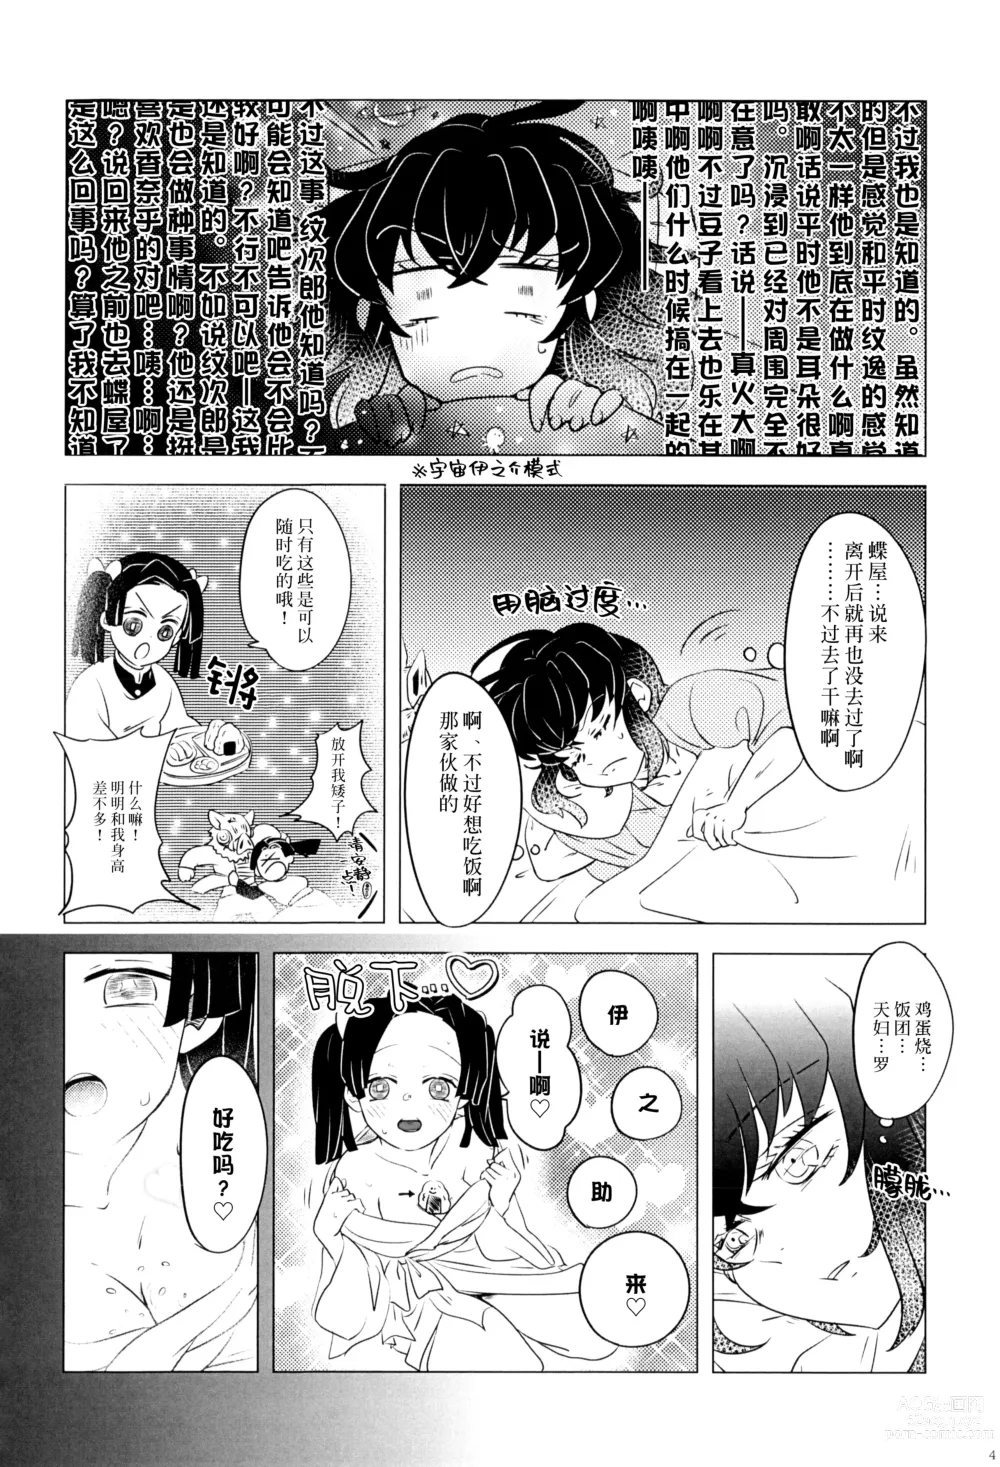 Page 6 of doujinshi 风起云涌